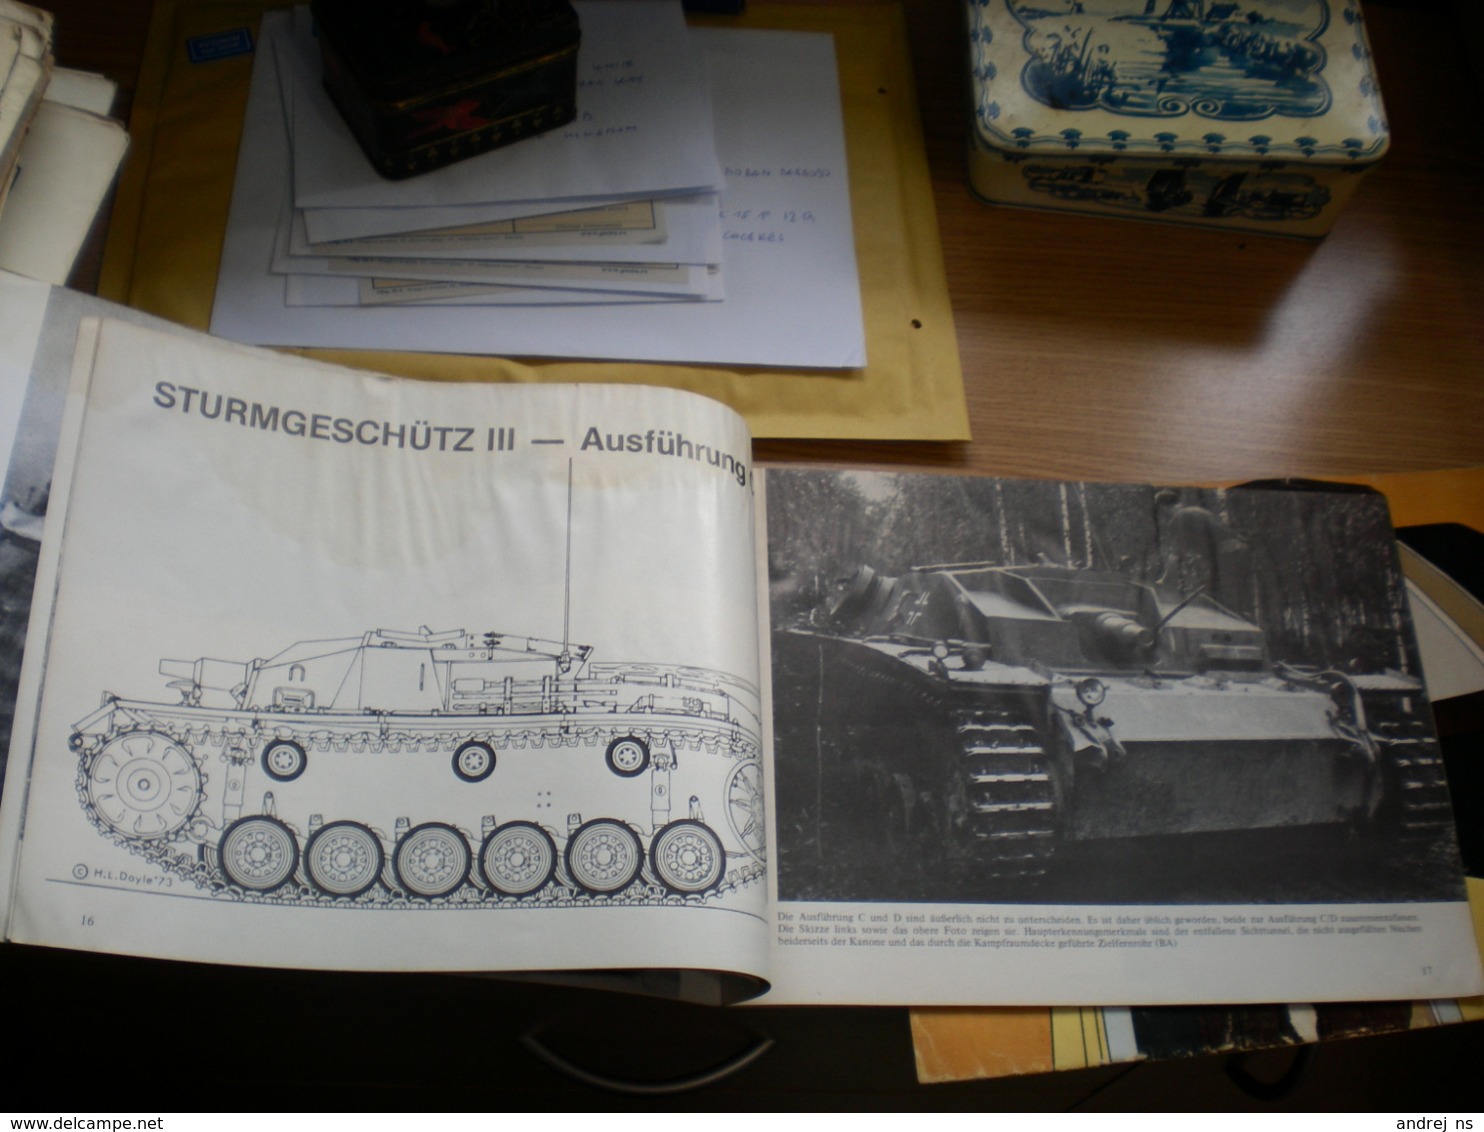 Tank Sturmgeschutz III L 24 Und L 33 Der Panzer Der Infanterie Waffen Arsenal 48 Pages - Duitsland